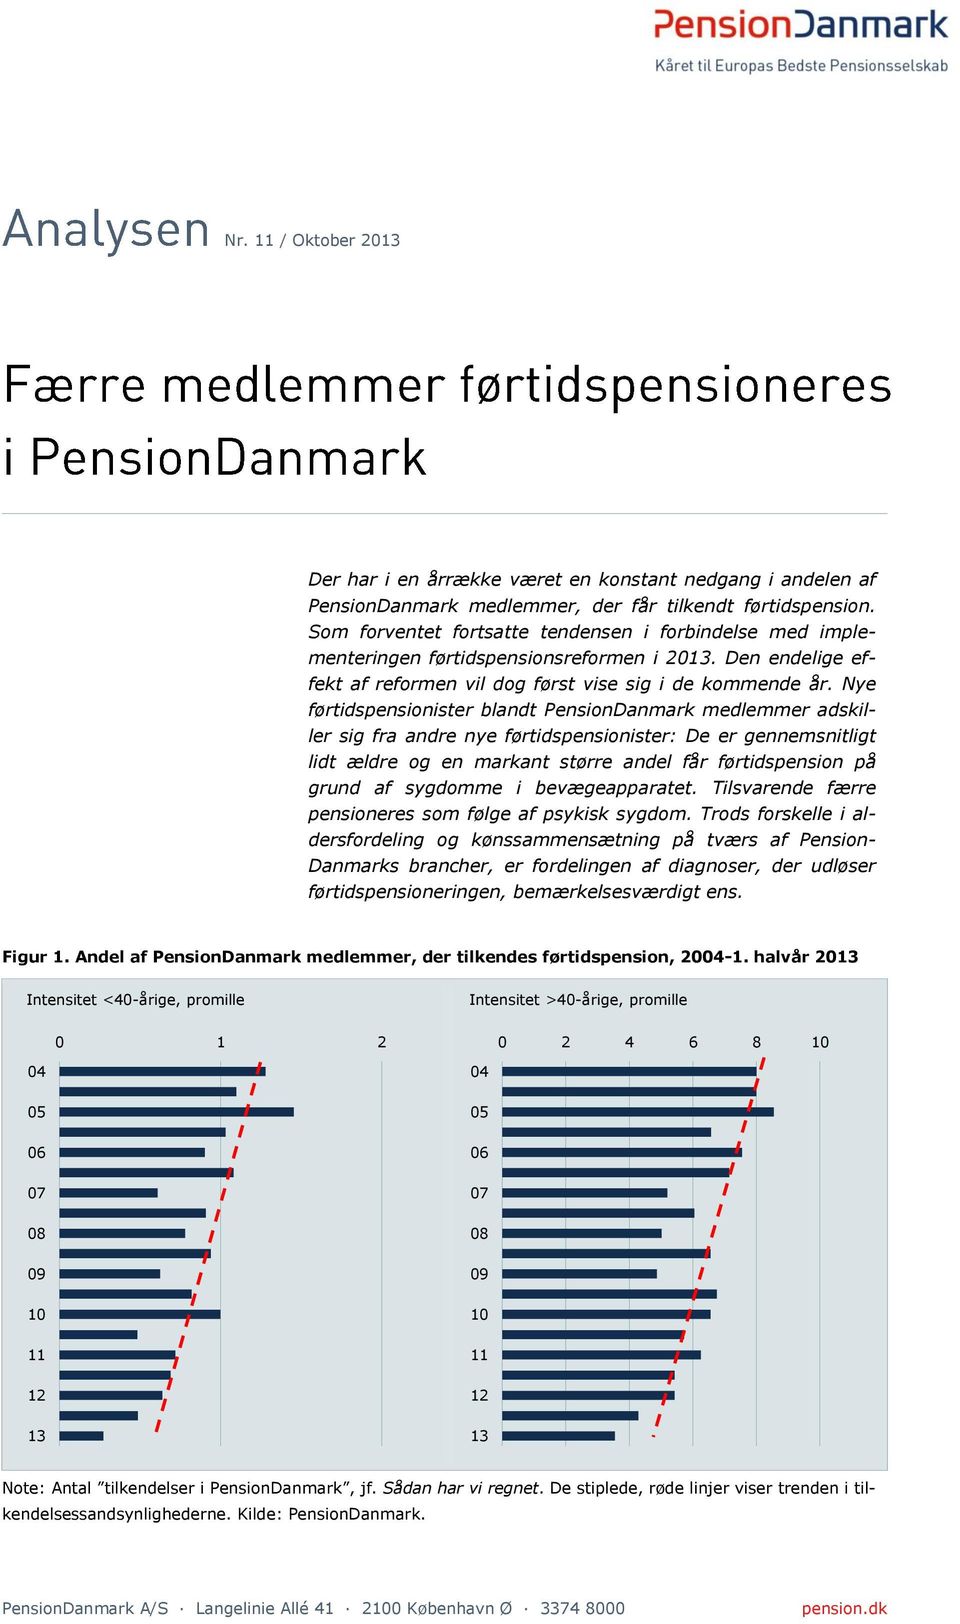 Nye førtidspensionister blandt PensionDanmark medlemmer adskiller sig fra andre nye førtidspensionister: De er gennemsnitligt lidt ældre og en markant større andel får førtidspension på grund af